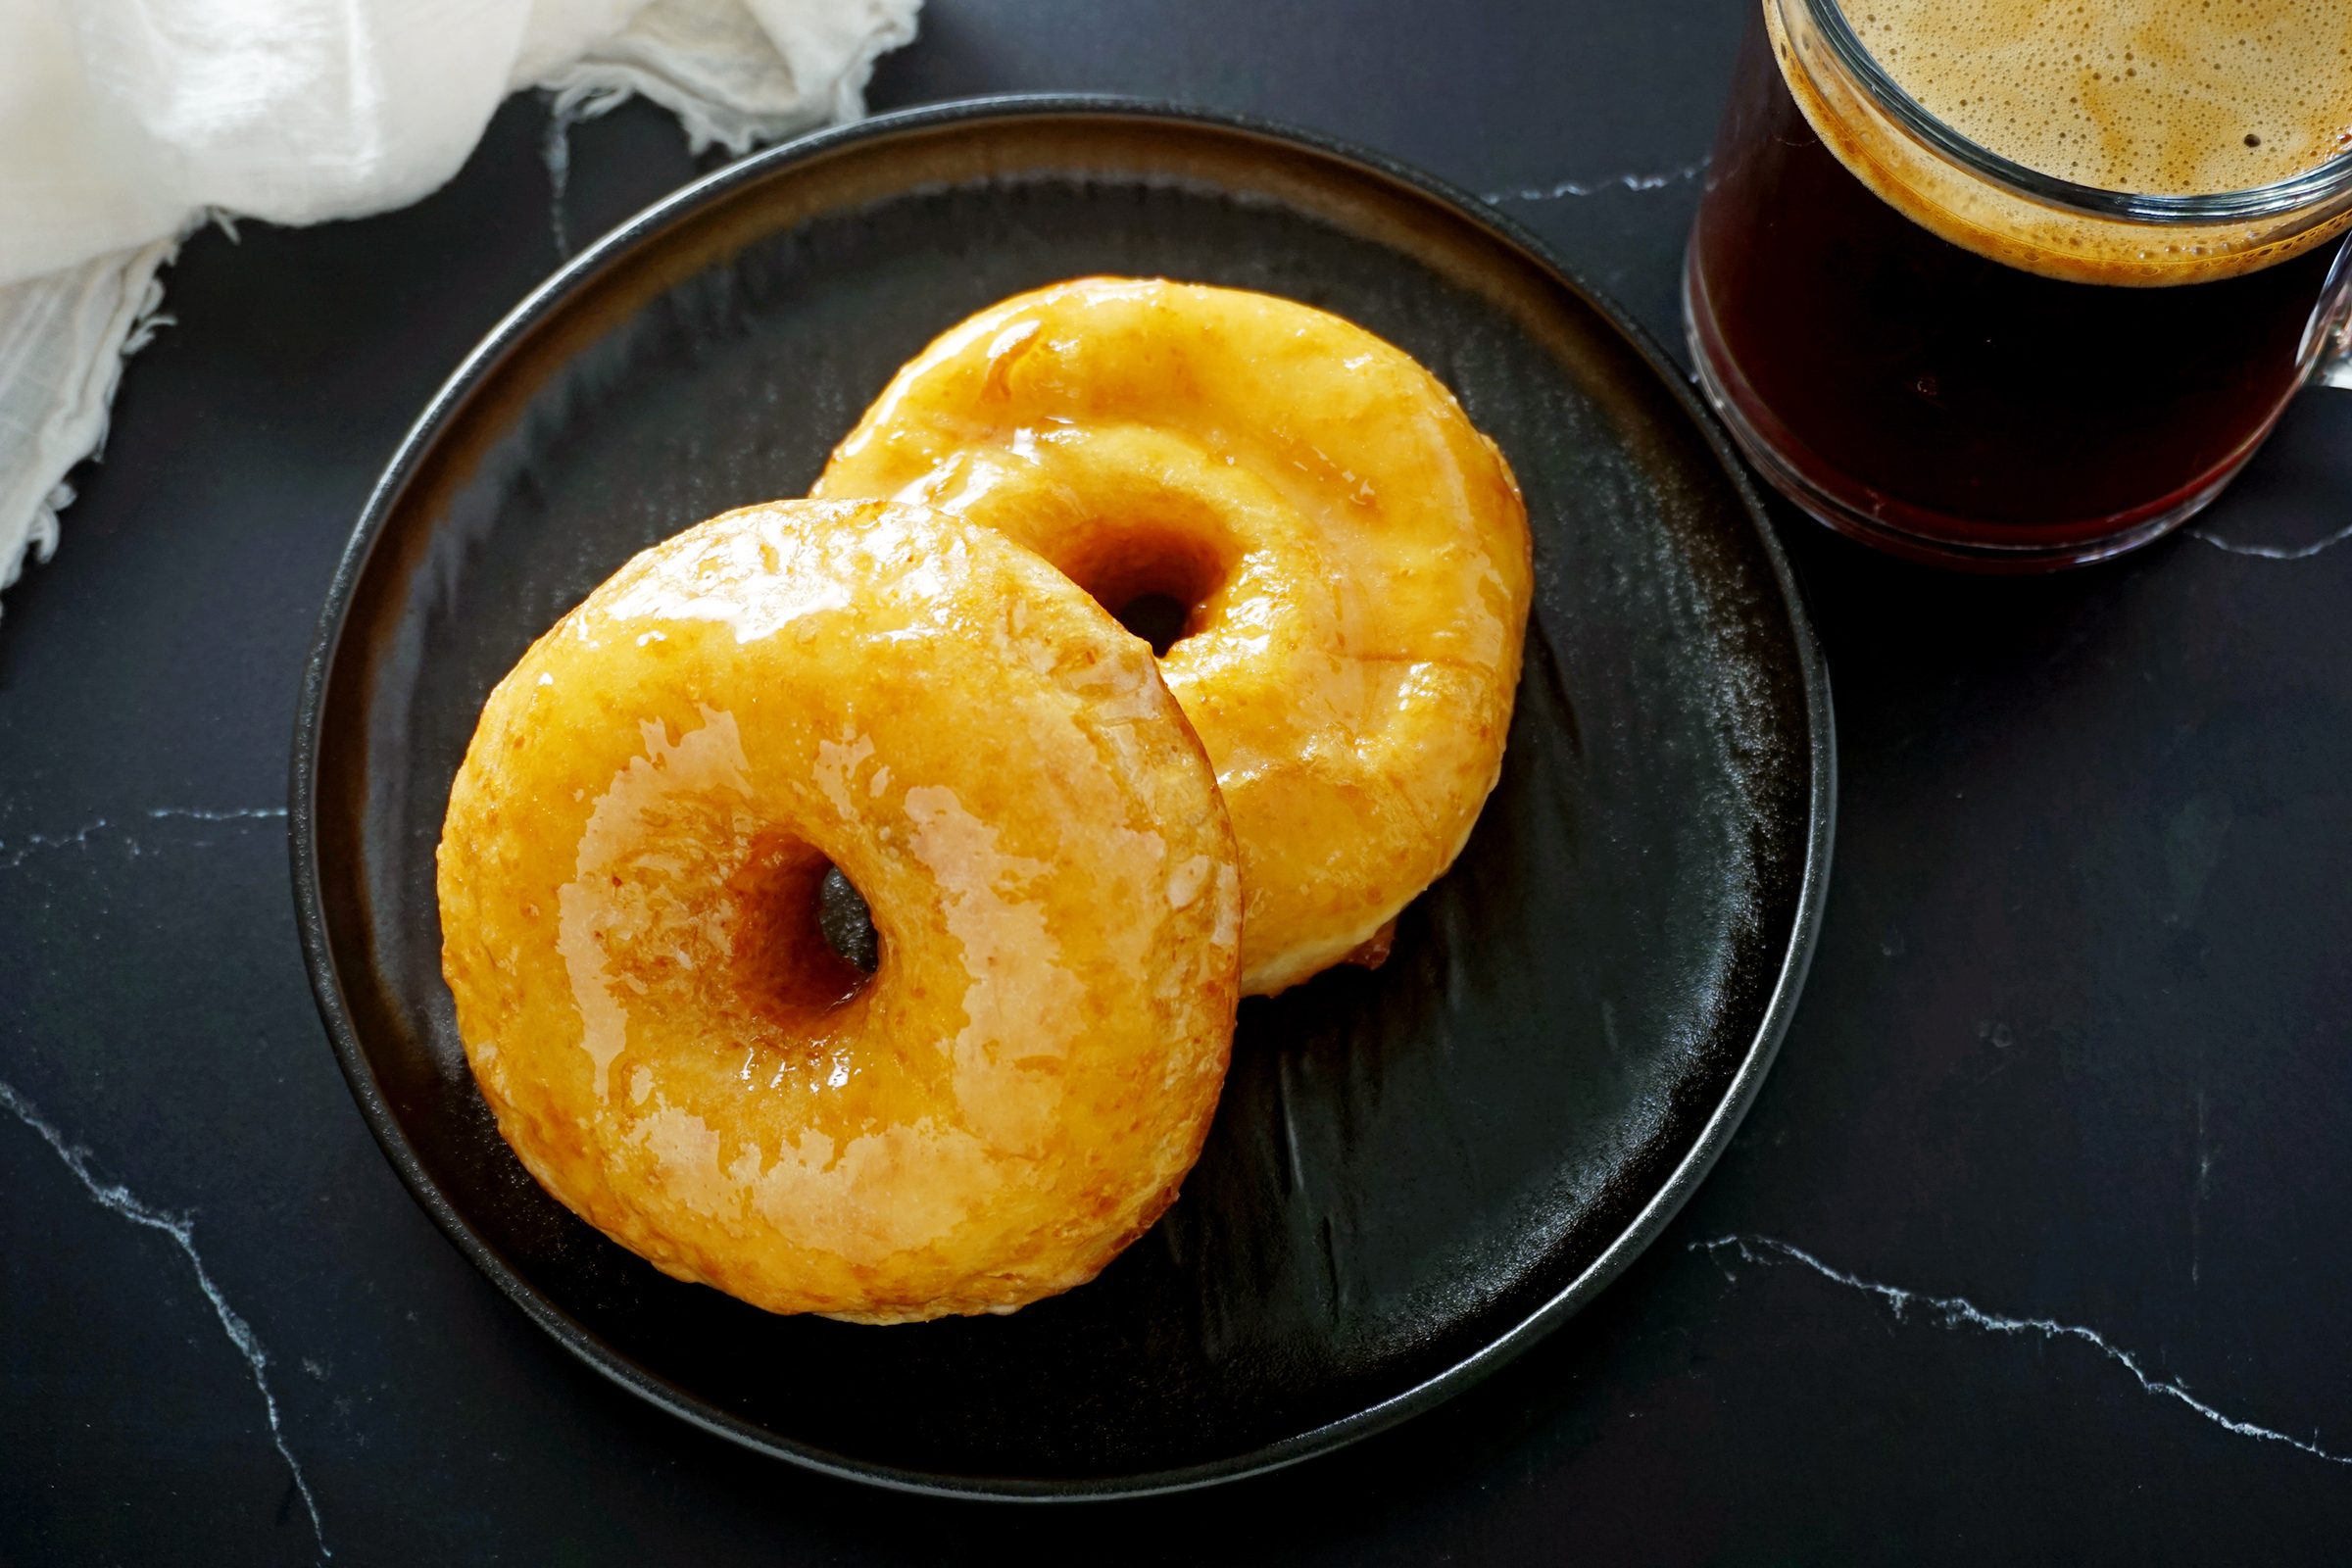 Copycat Krispy Kreme donuts